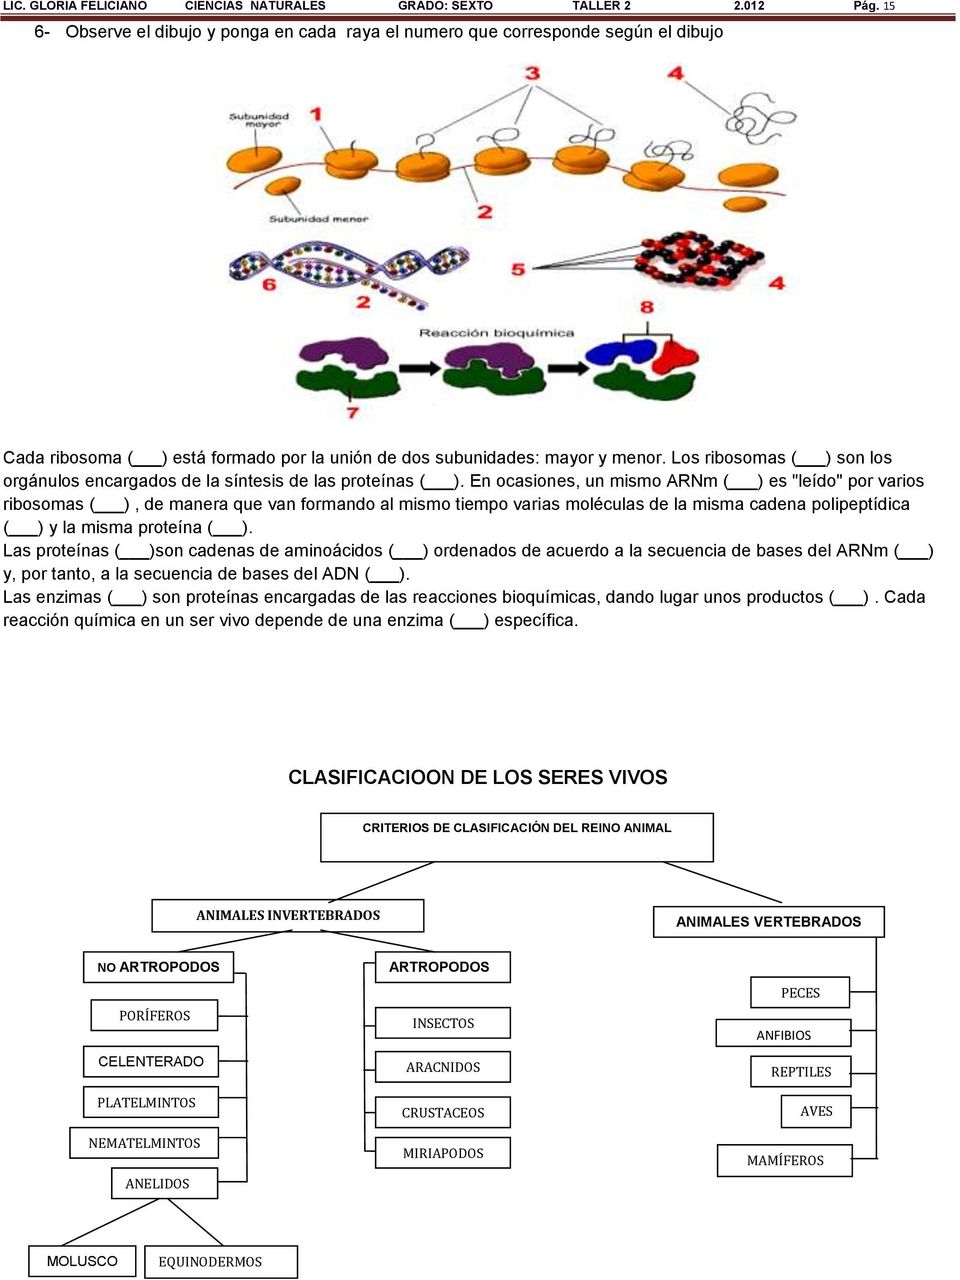 Los ribosomas ( ) son los orgánulos encargados de la síntesis de las proteínas ( ).